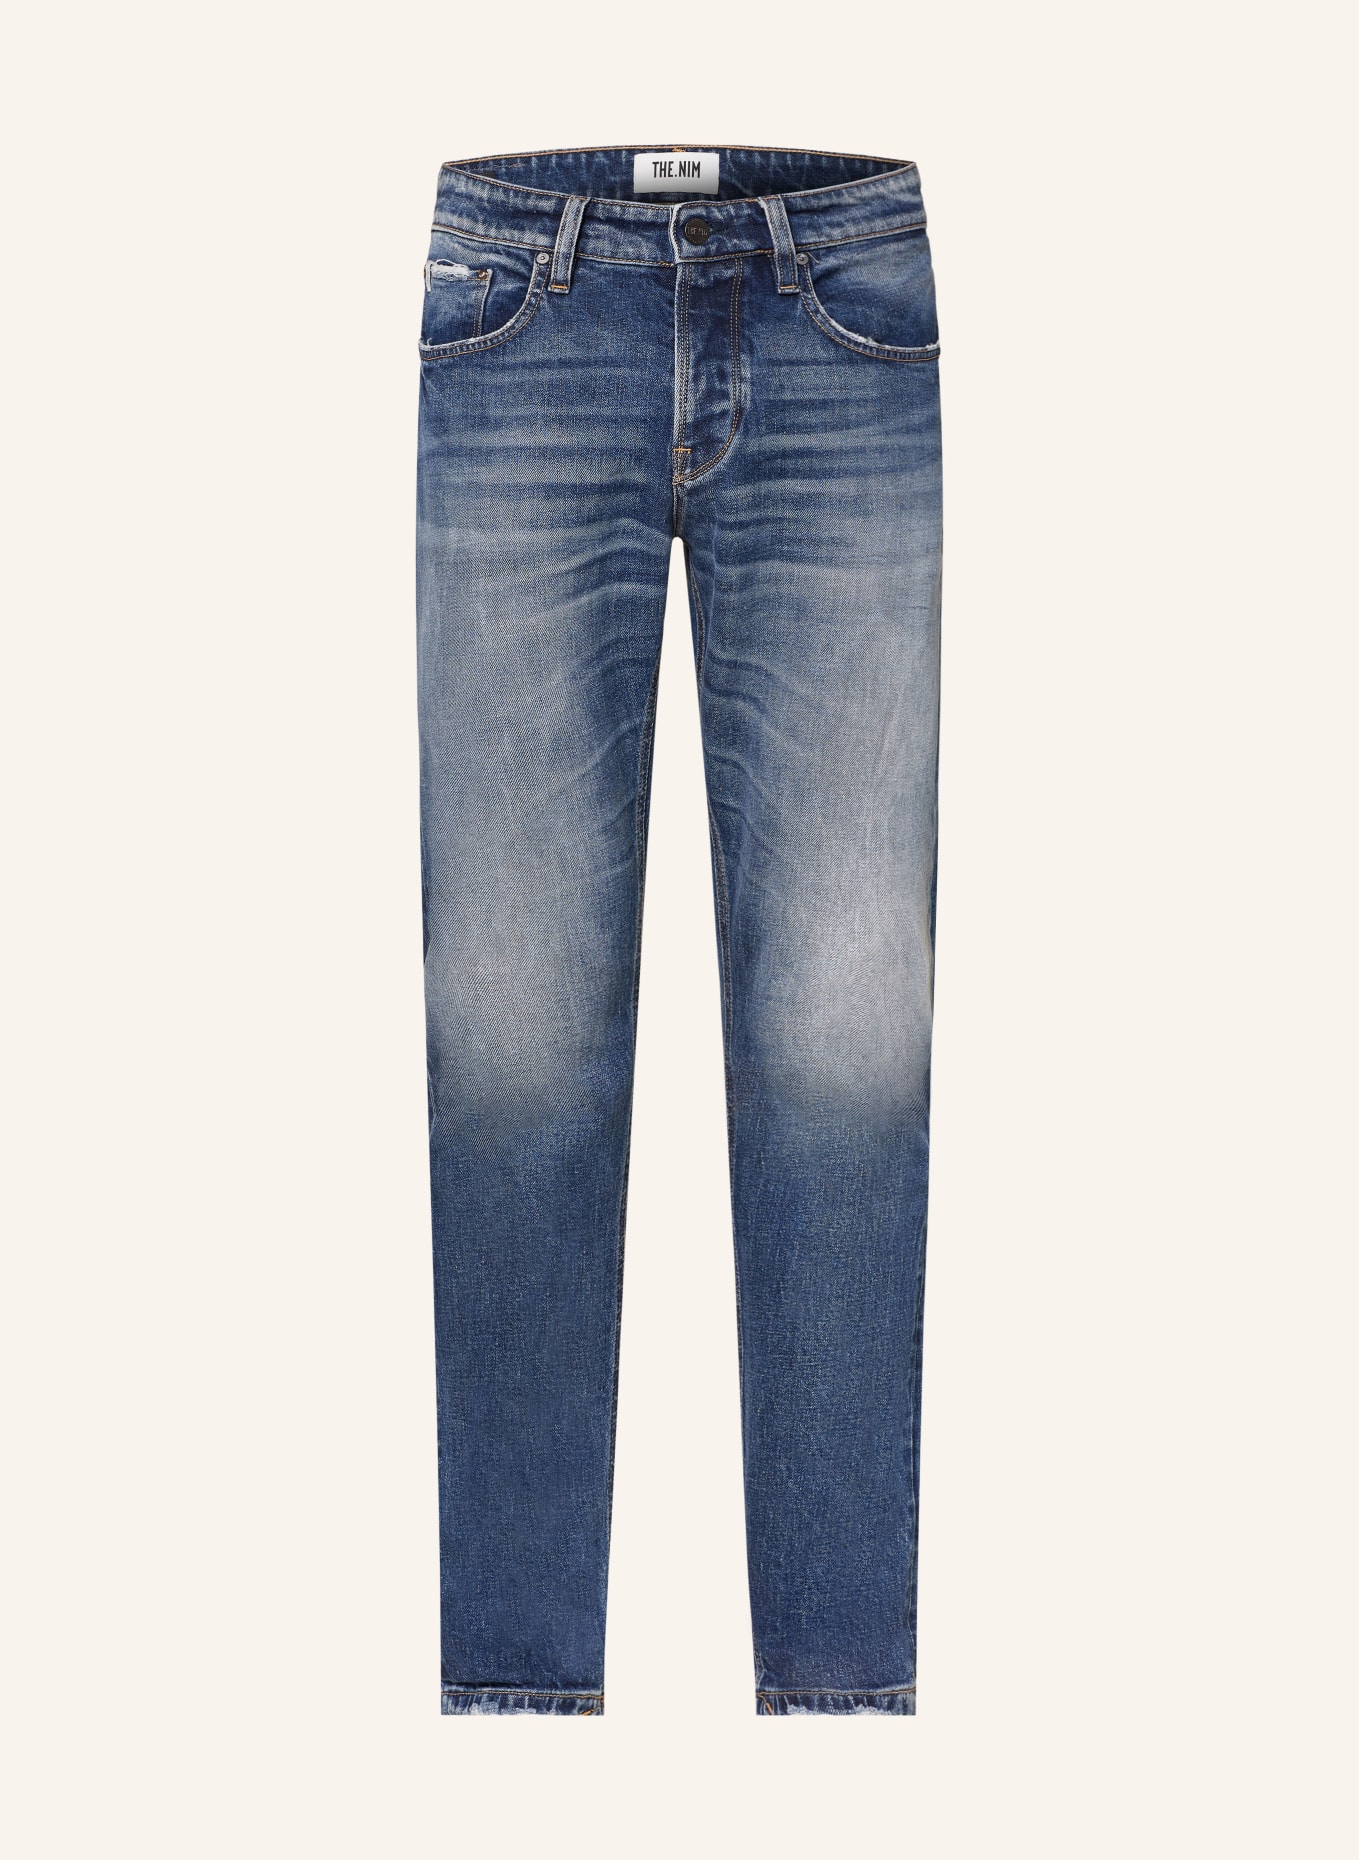 THE.NIM STANDARD Jeans MORRISON Tapered Slim Fit, Farbe: W762-MDB MEDIUM DARK BLUE (Bild 1)